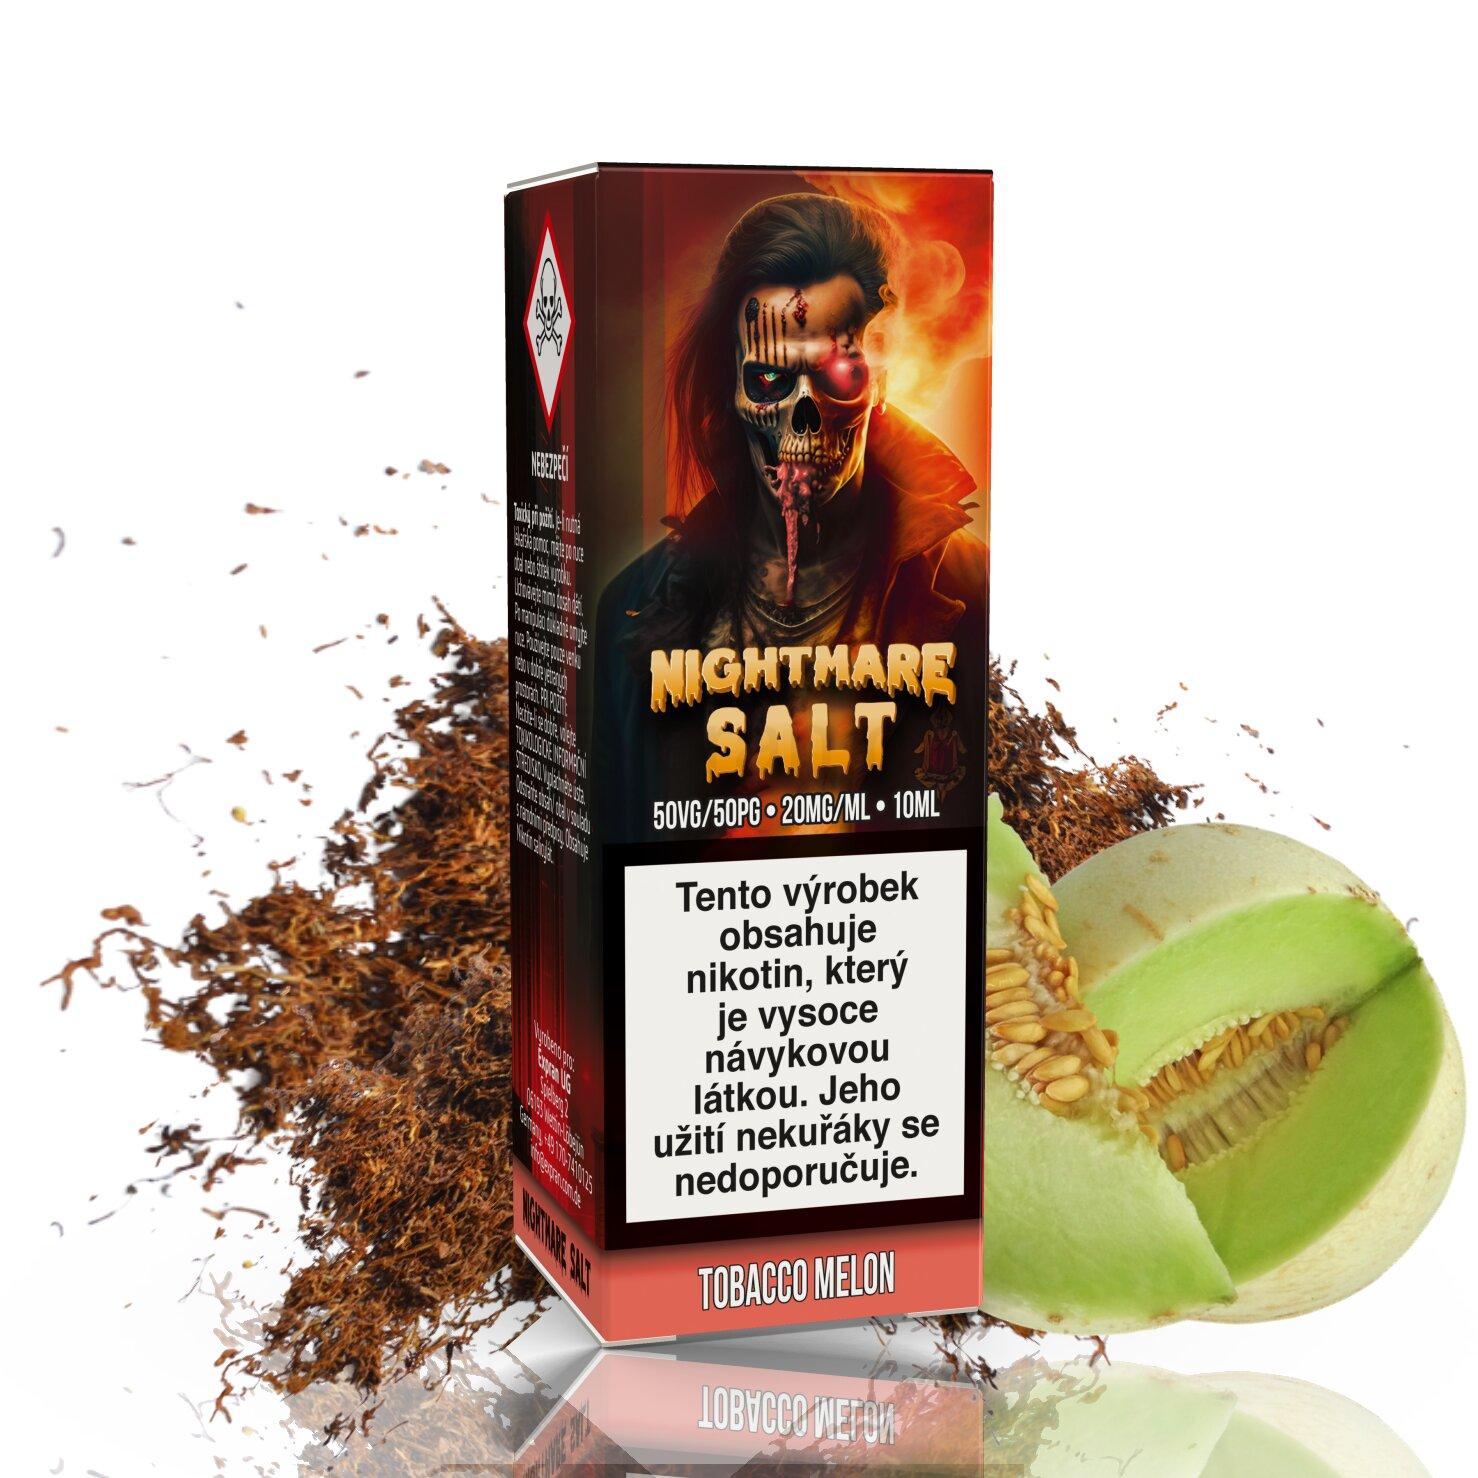 Expran Gmbh (DE) Tobacco Melon - Nightmare SALT - (50PG/50VG) 10ml Množství: 10ml, Množství nikotinu: 20mg